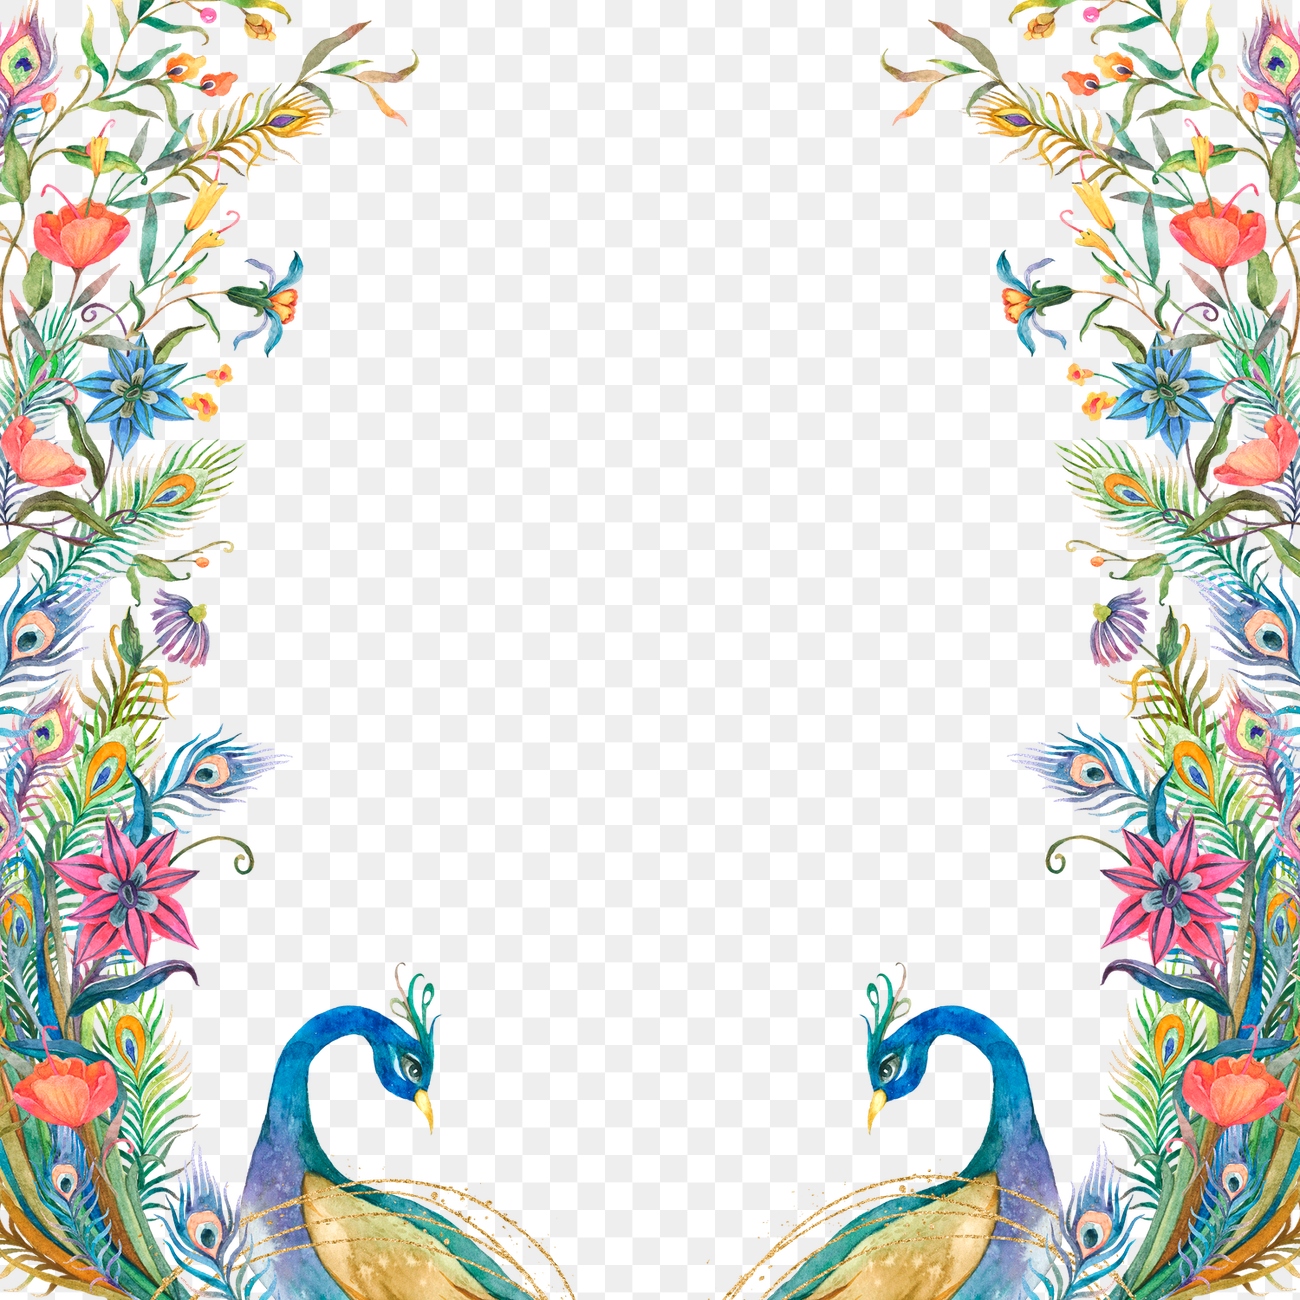 Png frame watercolor peacock and | Premium PNG - rawpixel